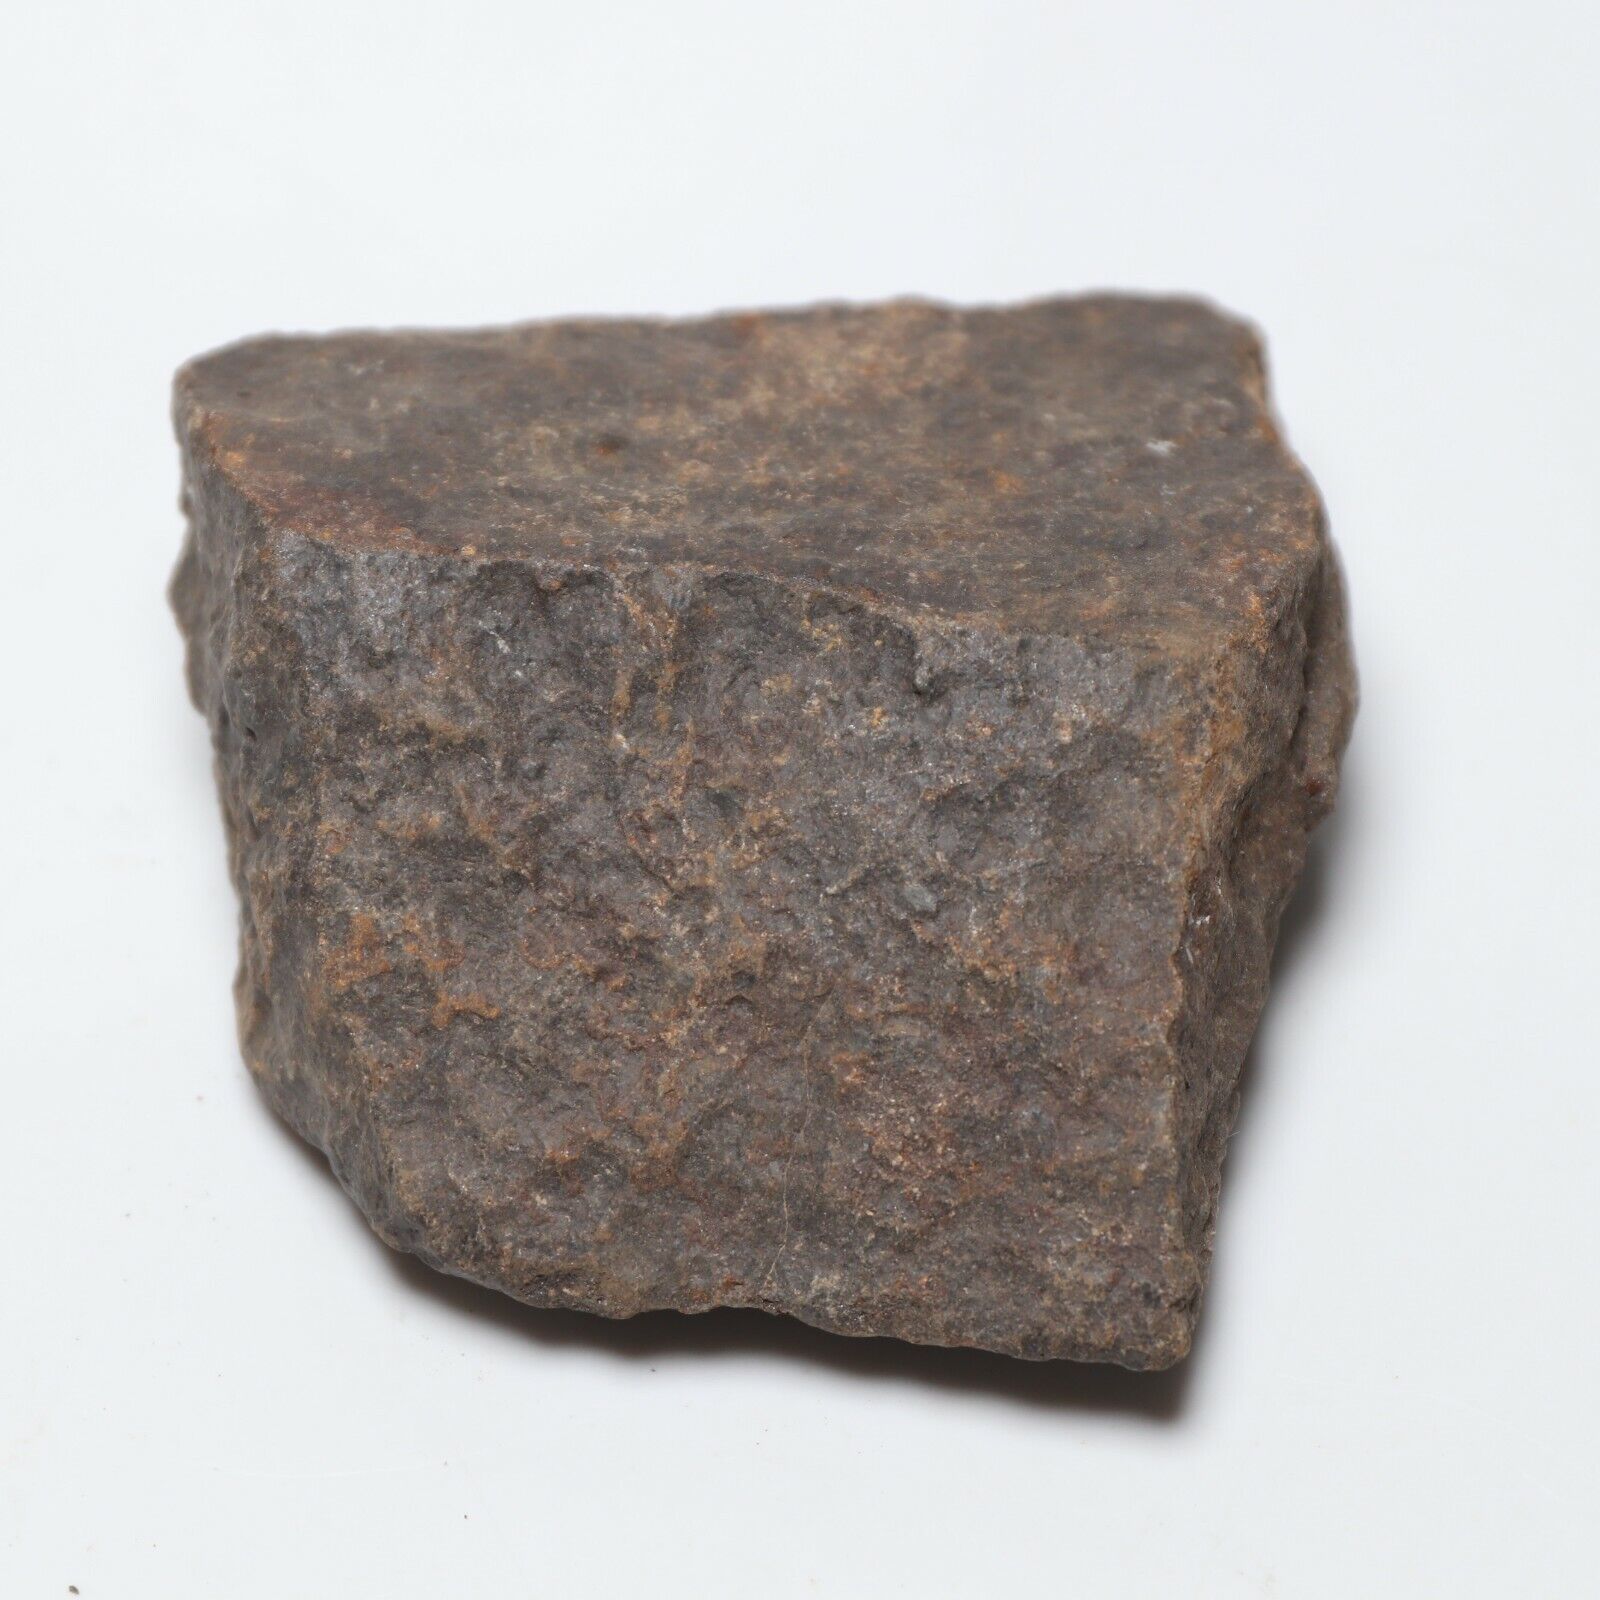 212 gram Unclassified NWA Meteorite Slice  A5486